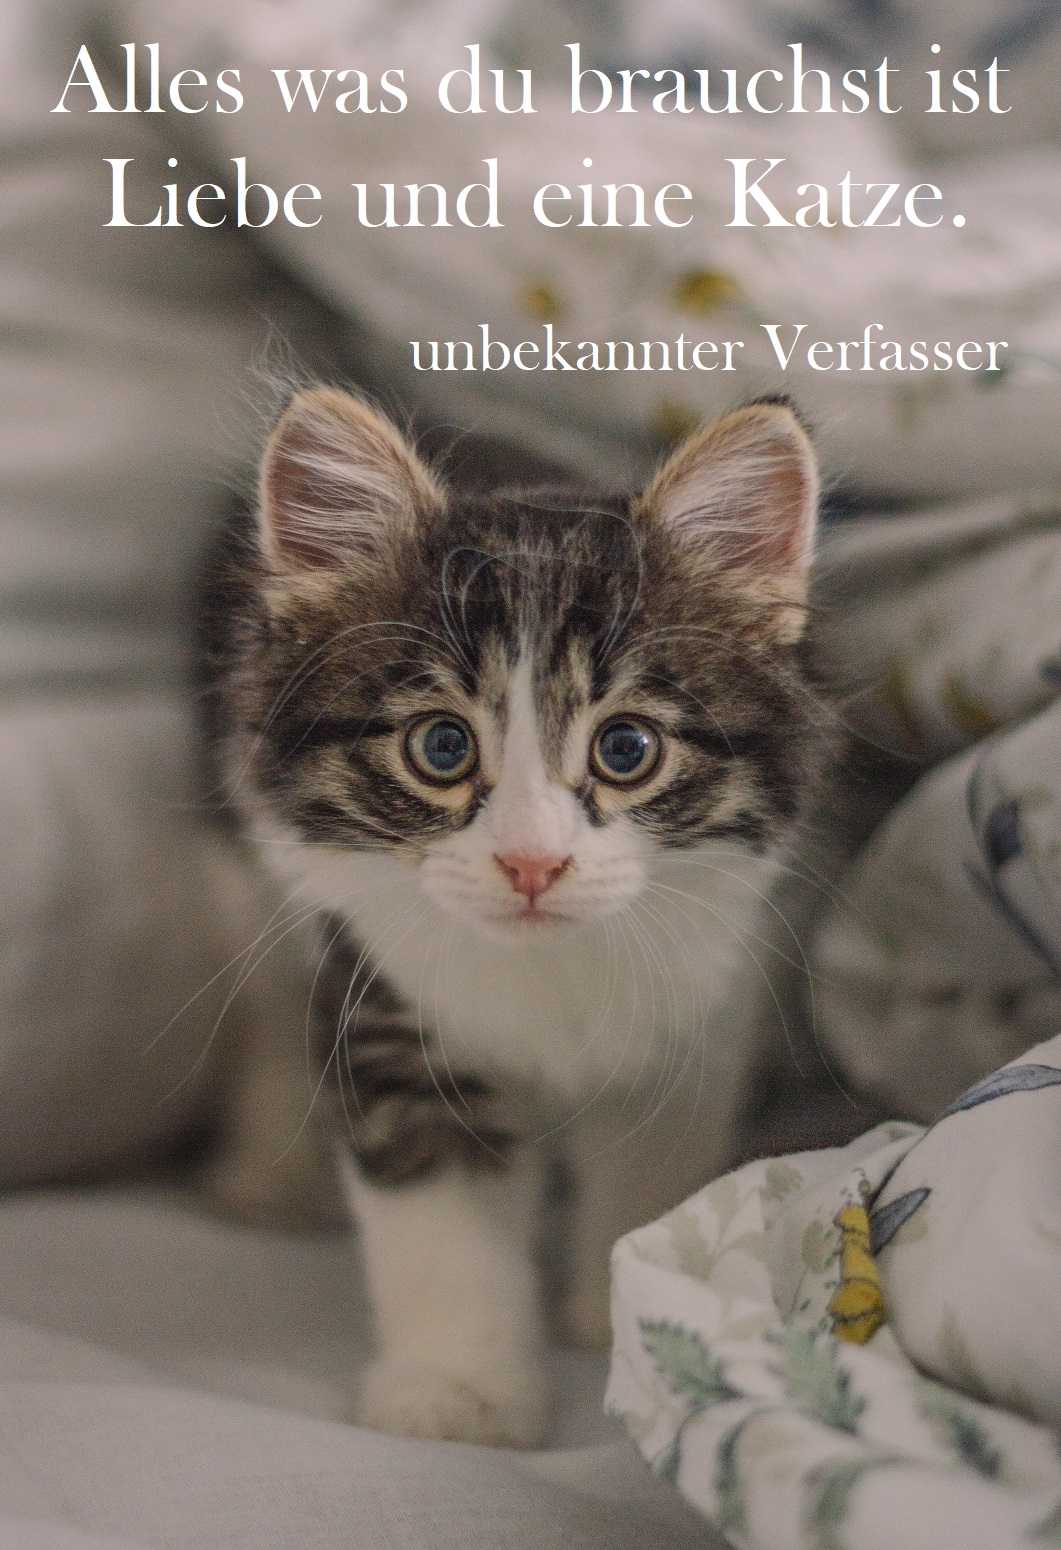 Sprüche und Zitate über Katzen: Teil 2 | Gutscheinspruch.de